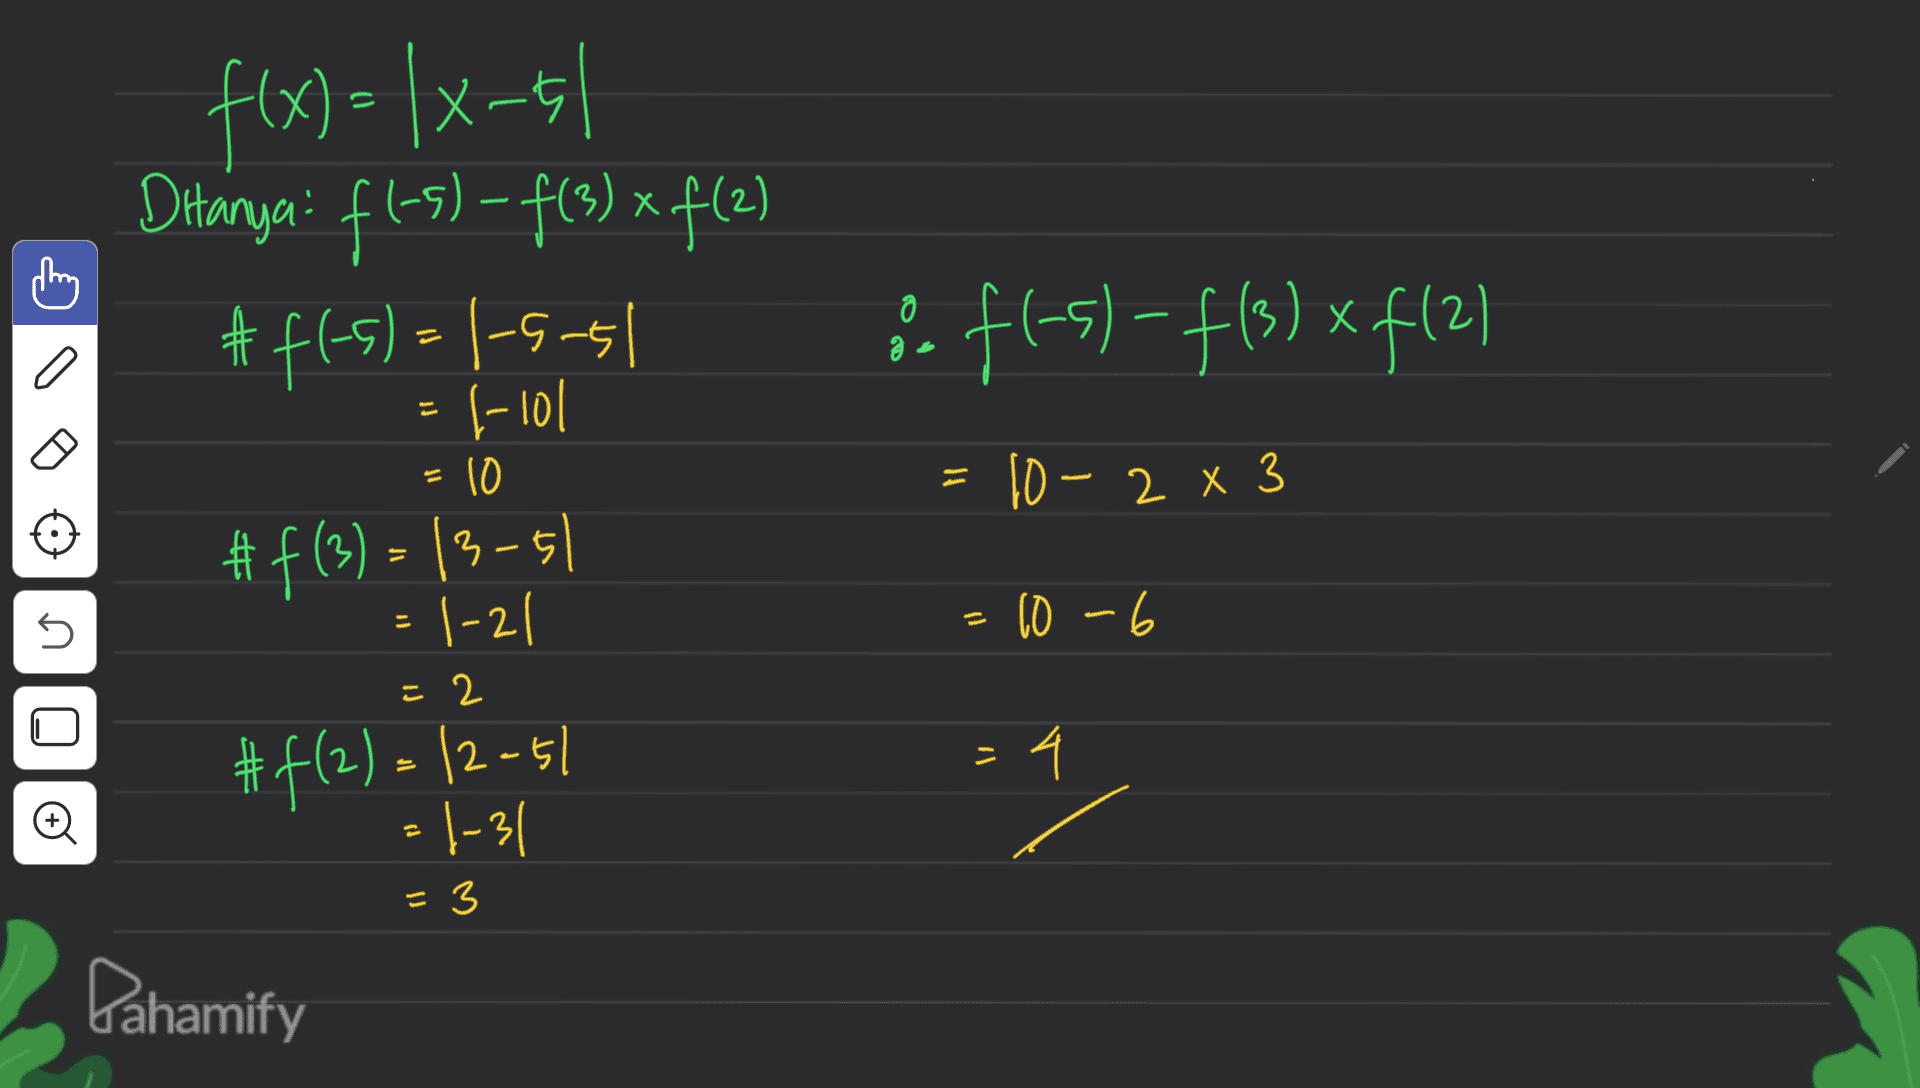 х f(x)= |x-51 Ditanya: fl-5) - f(3) + f(2) #f(-5) = 1-5.51 l-lol (21+x (58f-15-17 @ a 10 = 10 – 2 x 3 #f(3) = 13-51 1-21 - s s = 10-6 0 22 > #f(2)= /2-51 - 4 Đ =1-31 = 3 Dahamify 